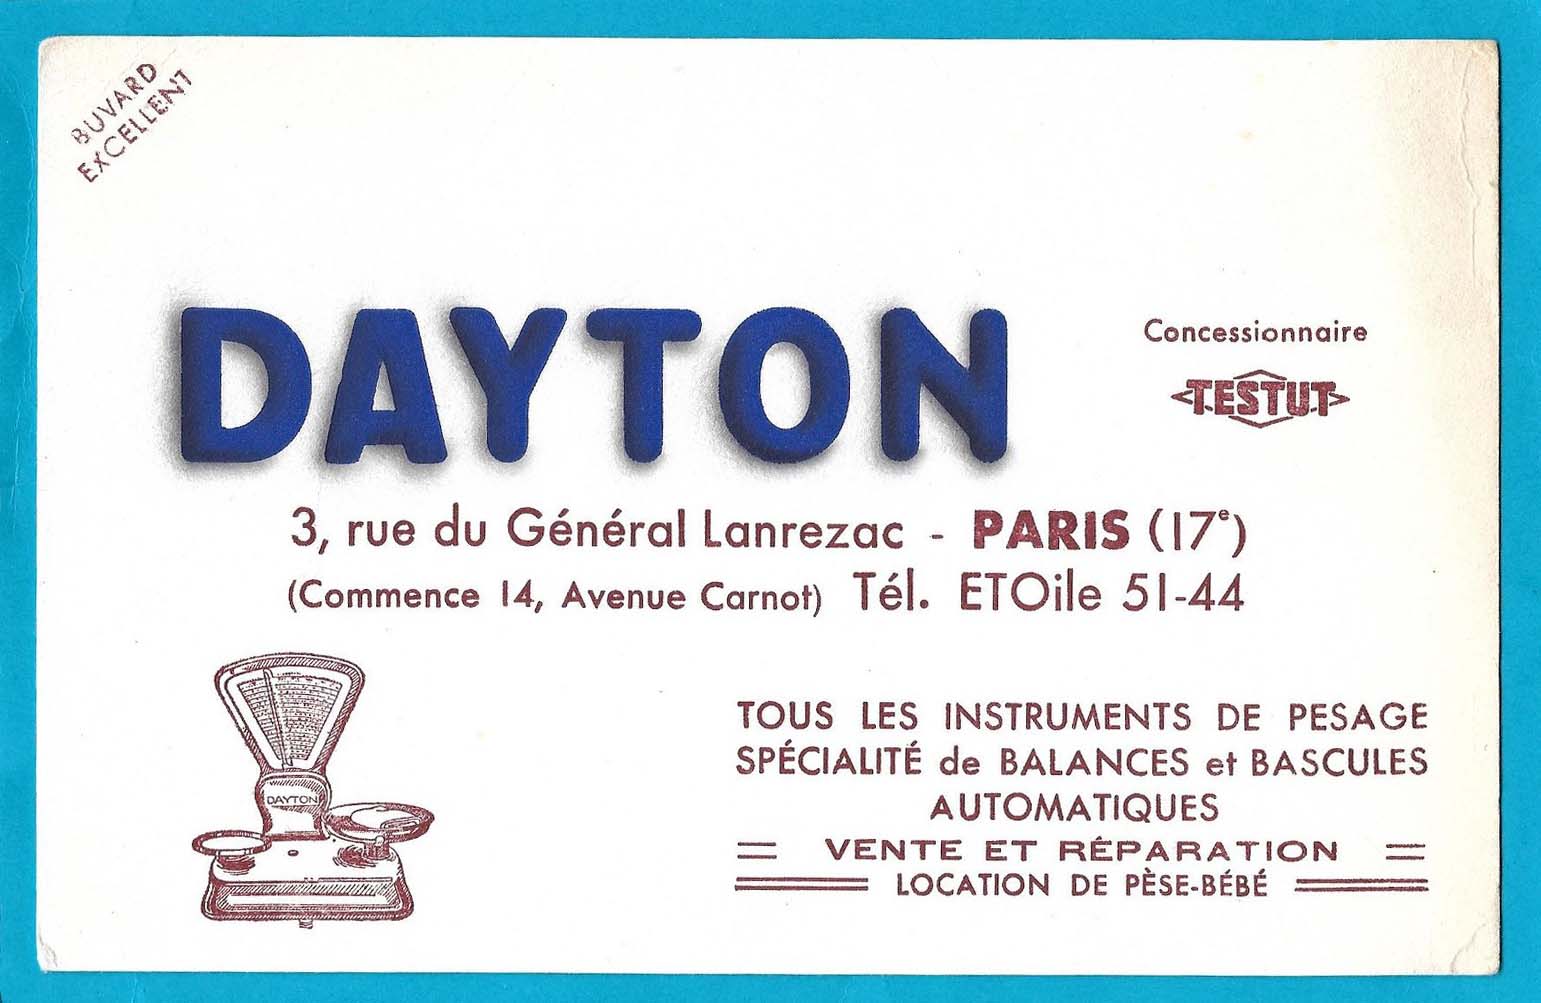 Buvard publicitaire pour Dayton - Concessionnaire Testut - 3, rue du Général Lanrezac à Paris 17e